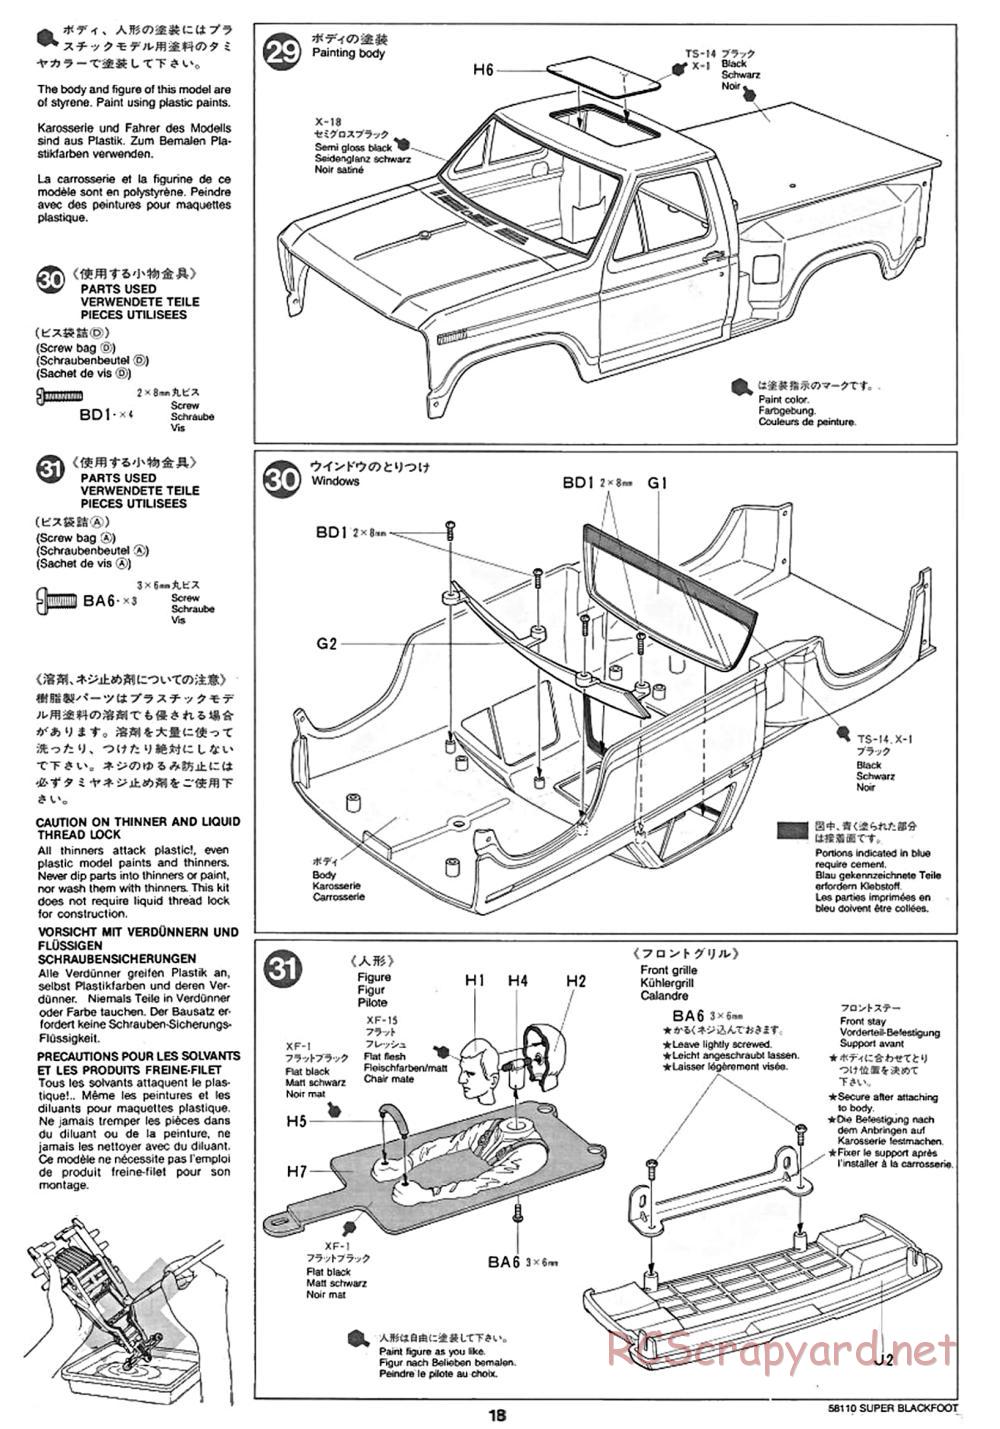 Tamiya - Super Blackfoot Chassis - Manual - Page 18